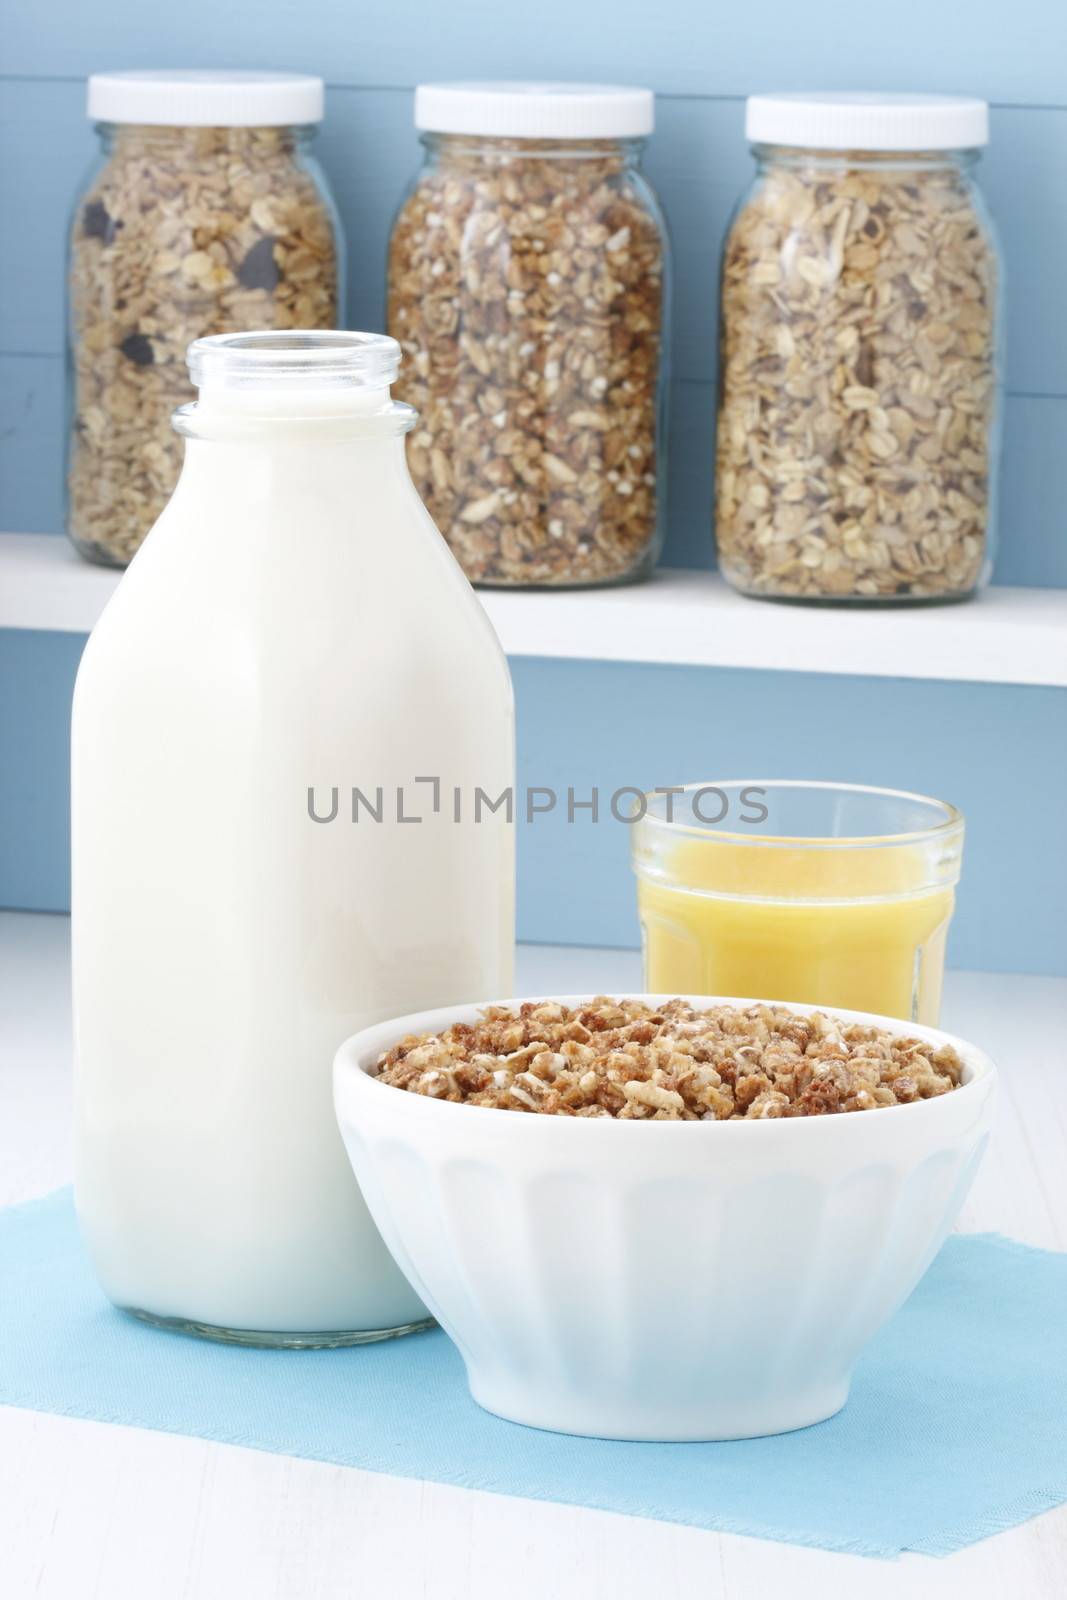 Delicious healthy cereal breakfast by tacar